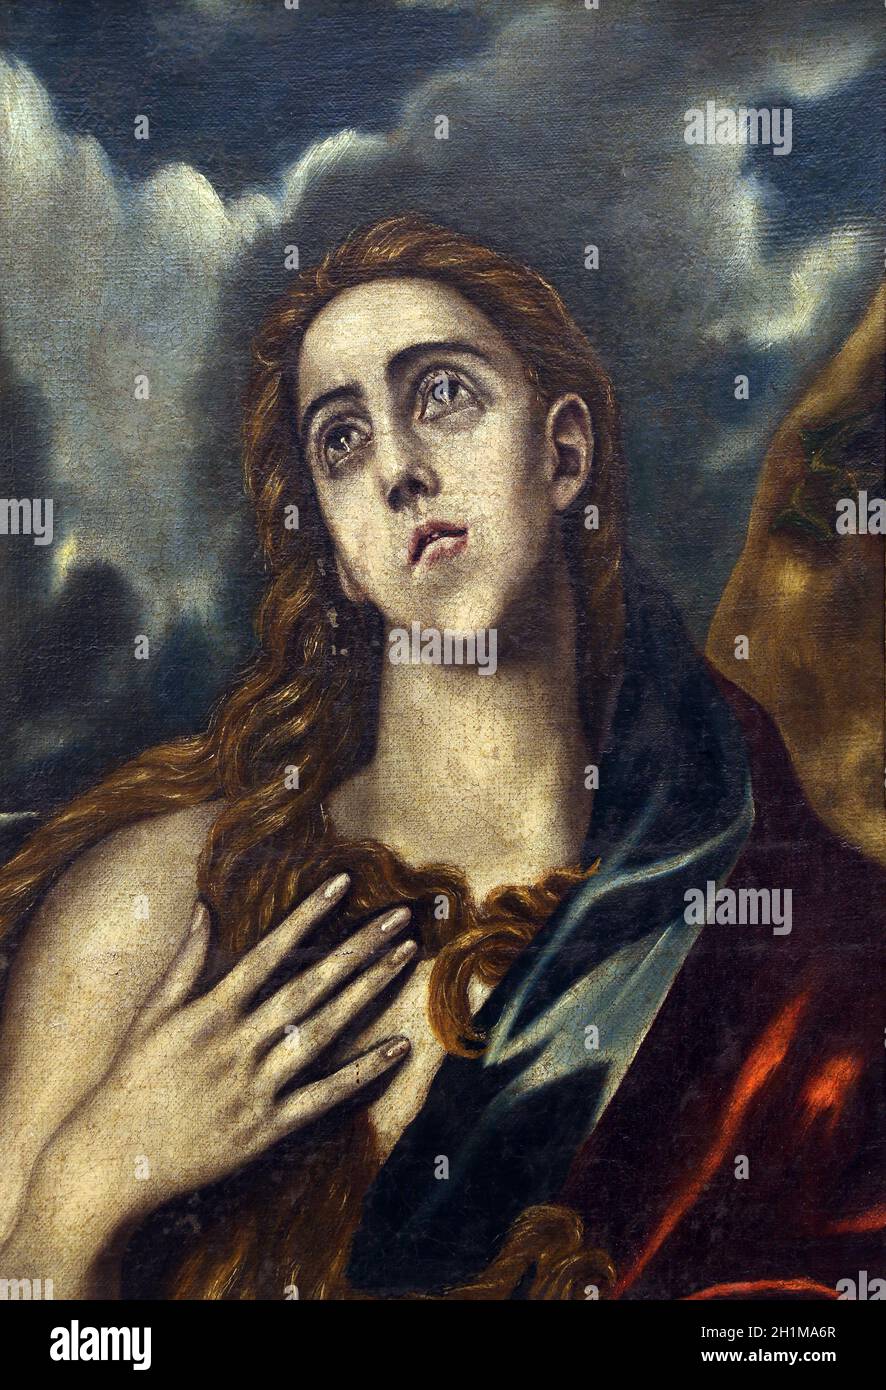 ZAGREB, KROATIEN - DEZEMBER 08: Nachfolger von Domenico Theotocopuli El Greco: Hl. Maria Magdalena, Sammlung alter Meister, Kroatische Akademie der Wissenschaften, D Stockfoto